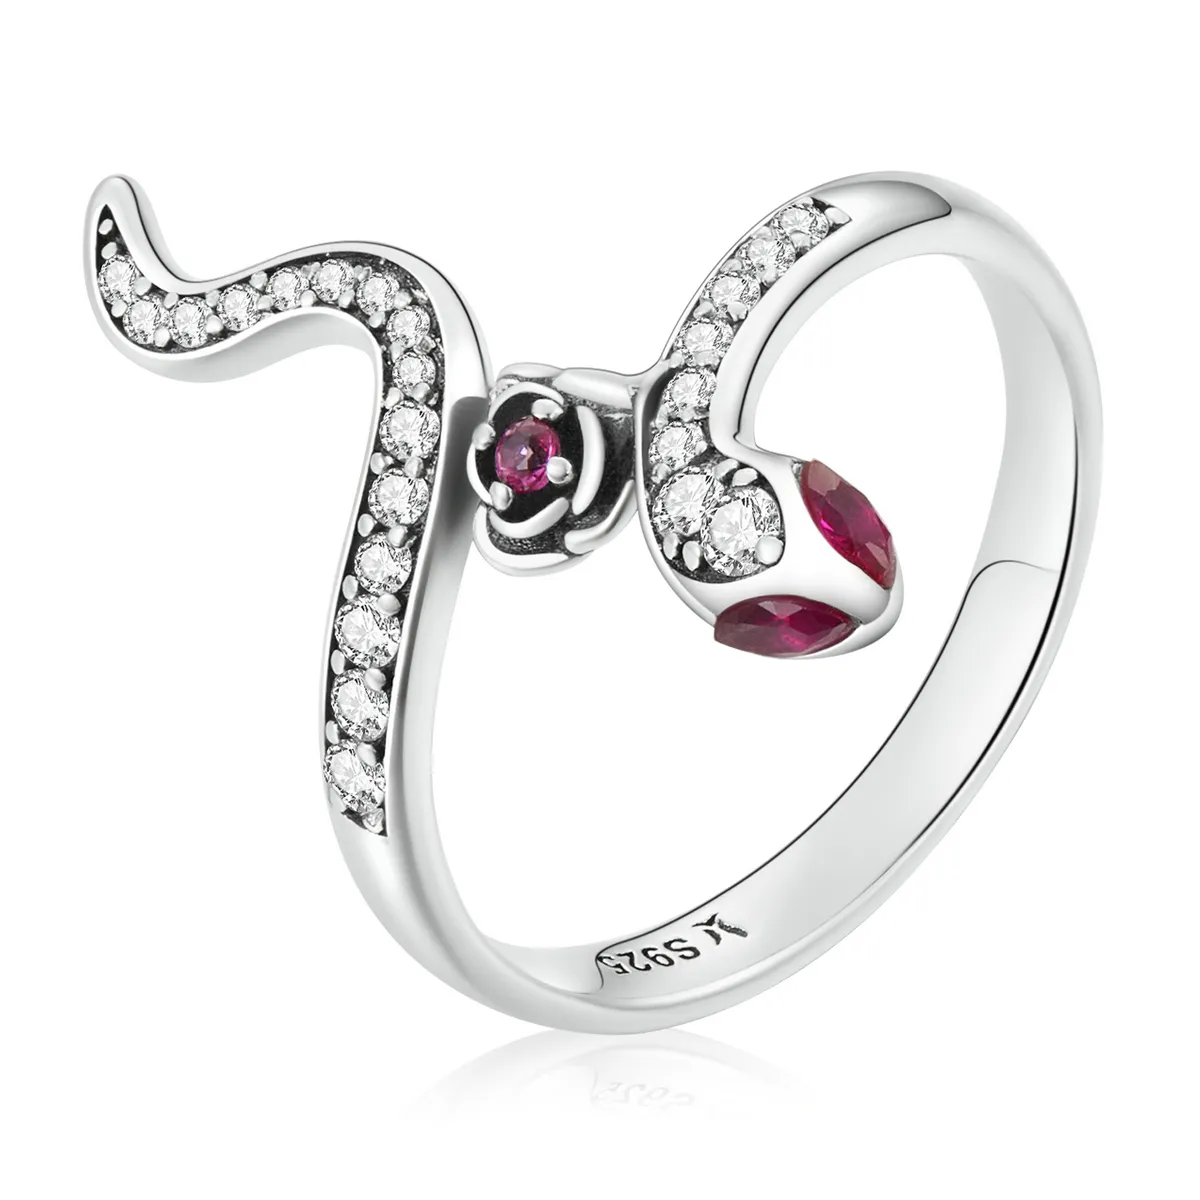 Scr789 anel de prata esterlina 925, cobra e pedra preciosa rosa